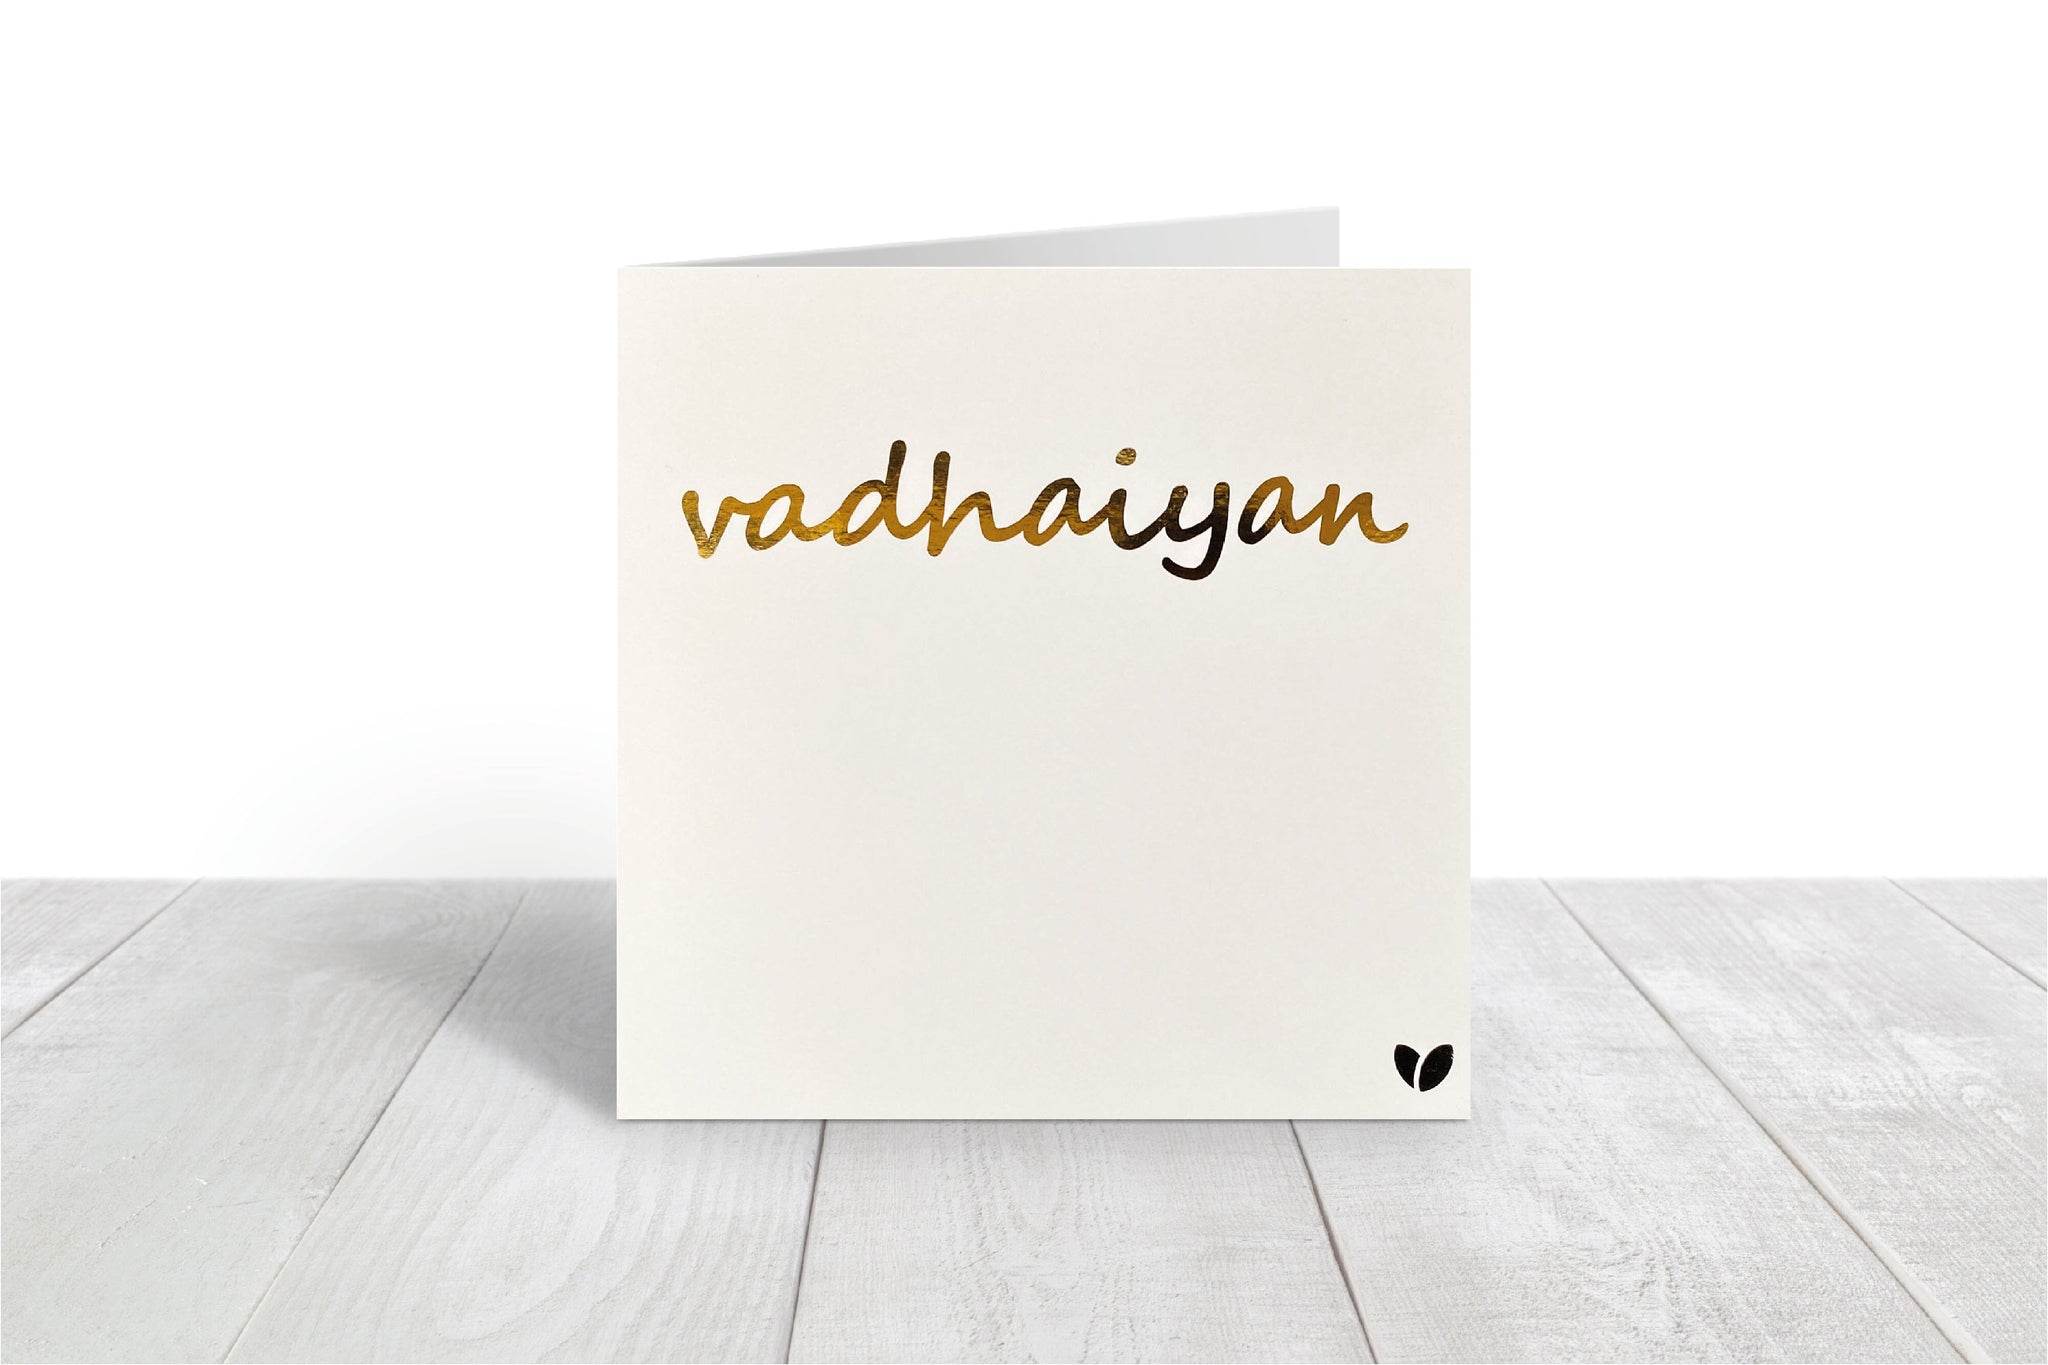 Vadhaiyan! Greeting card